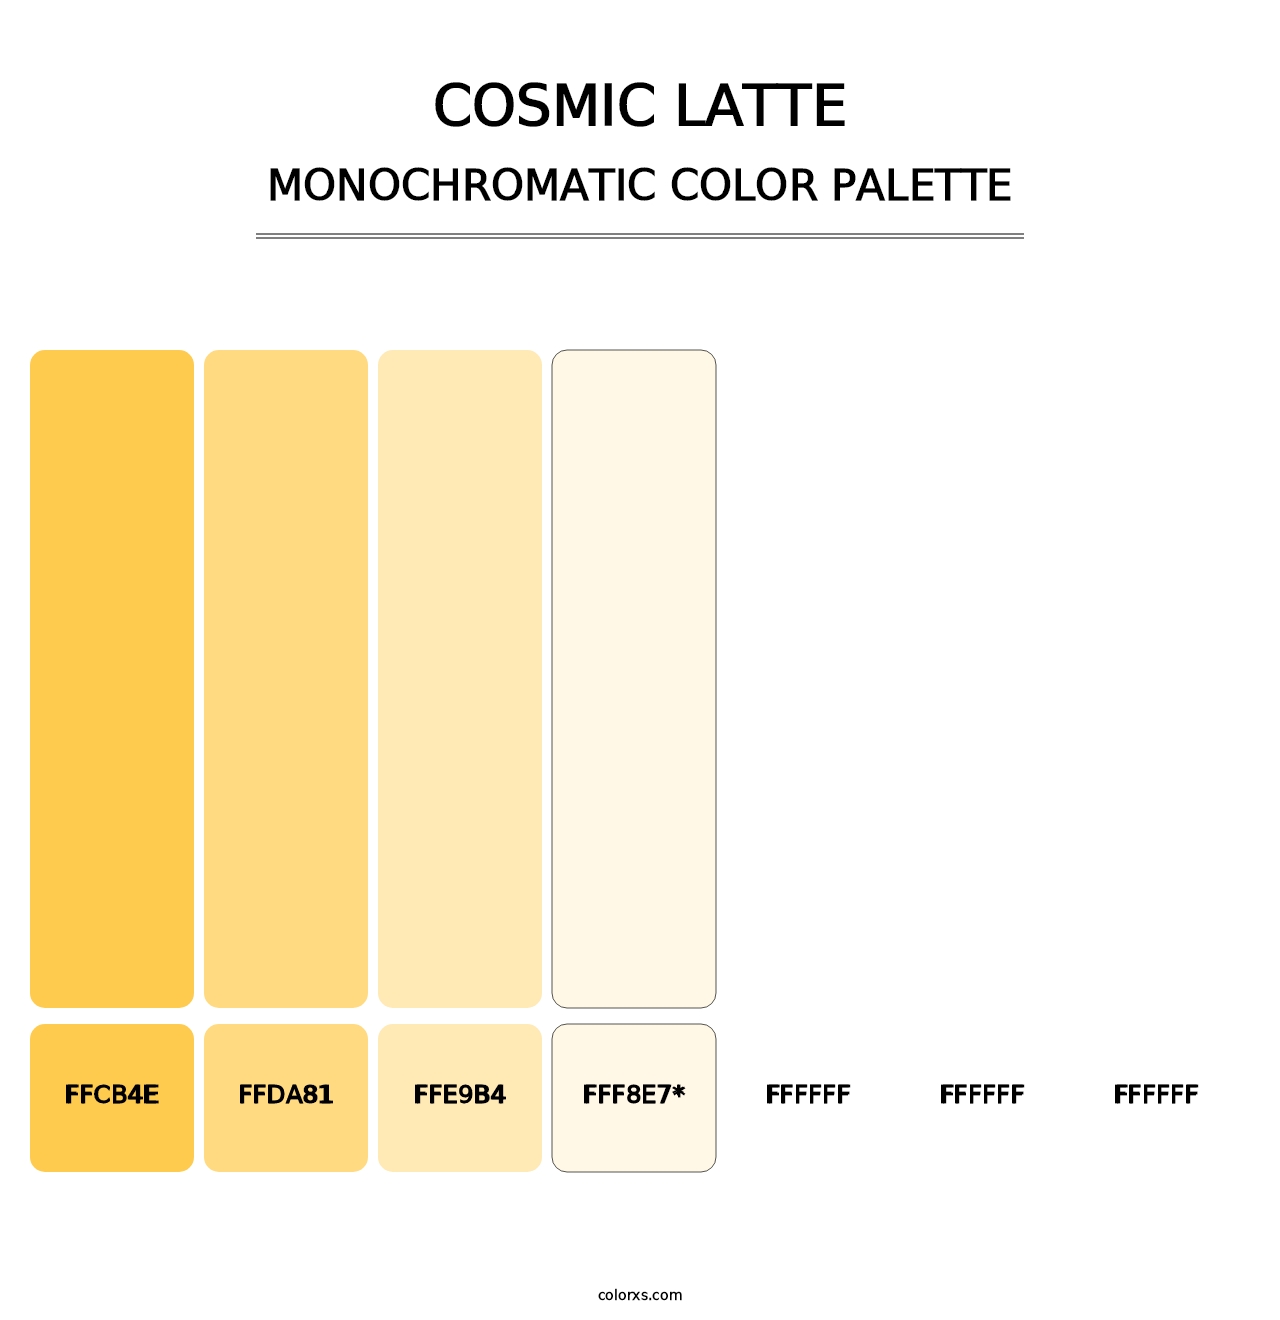 Cosmic Latte - Monochromatic Color Palette